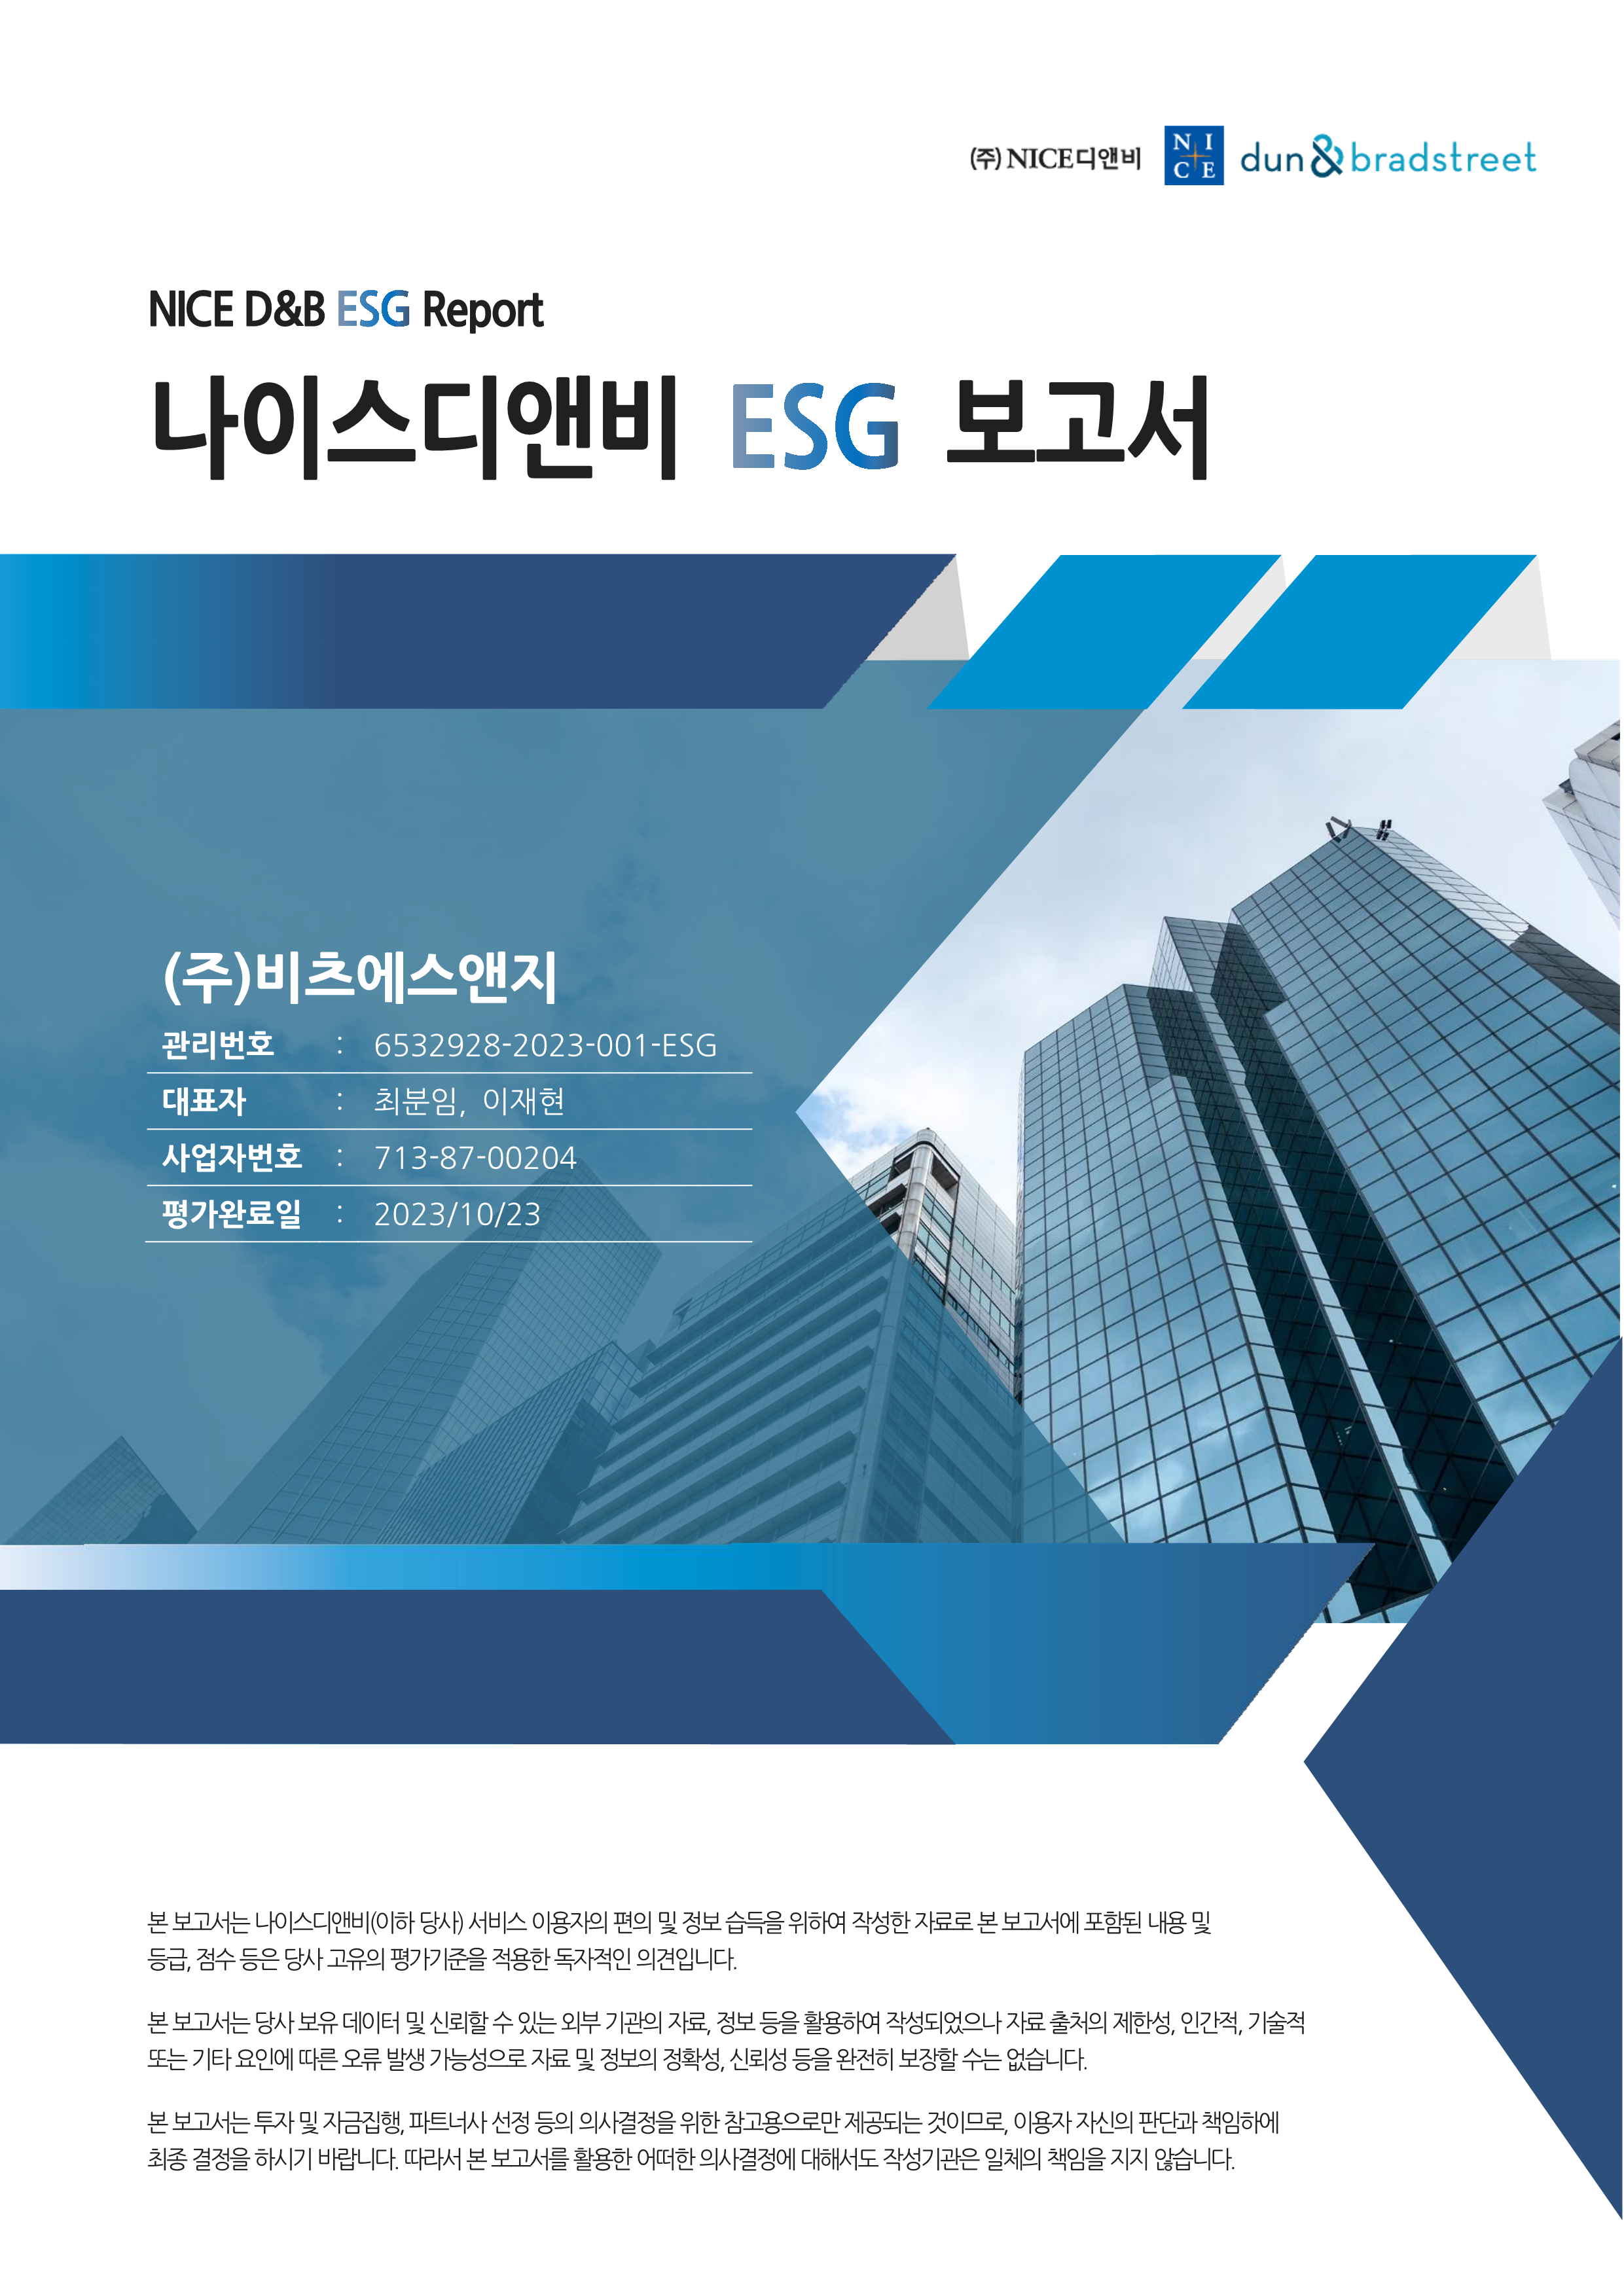 ESG진단 평가결과 보고서(우수)